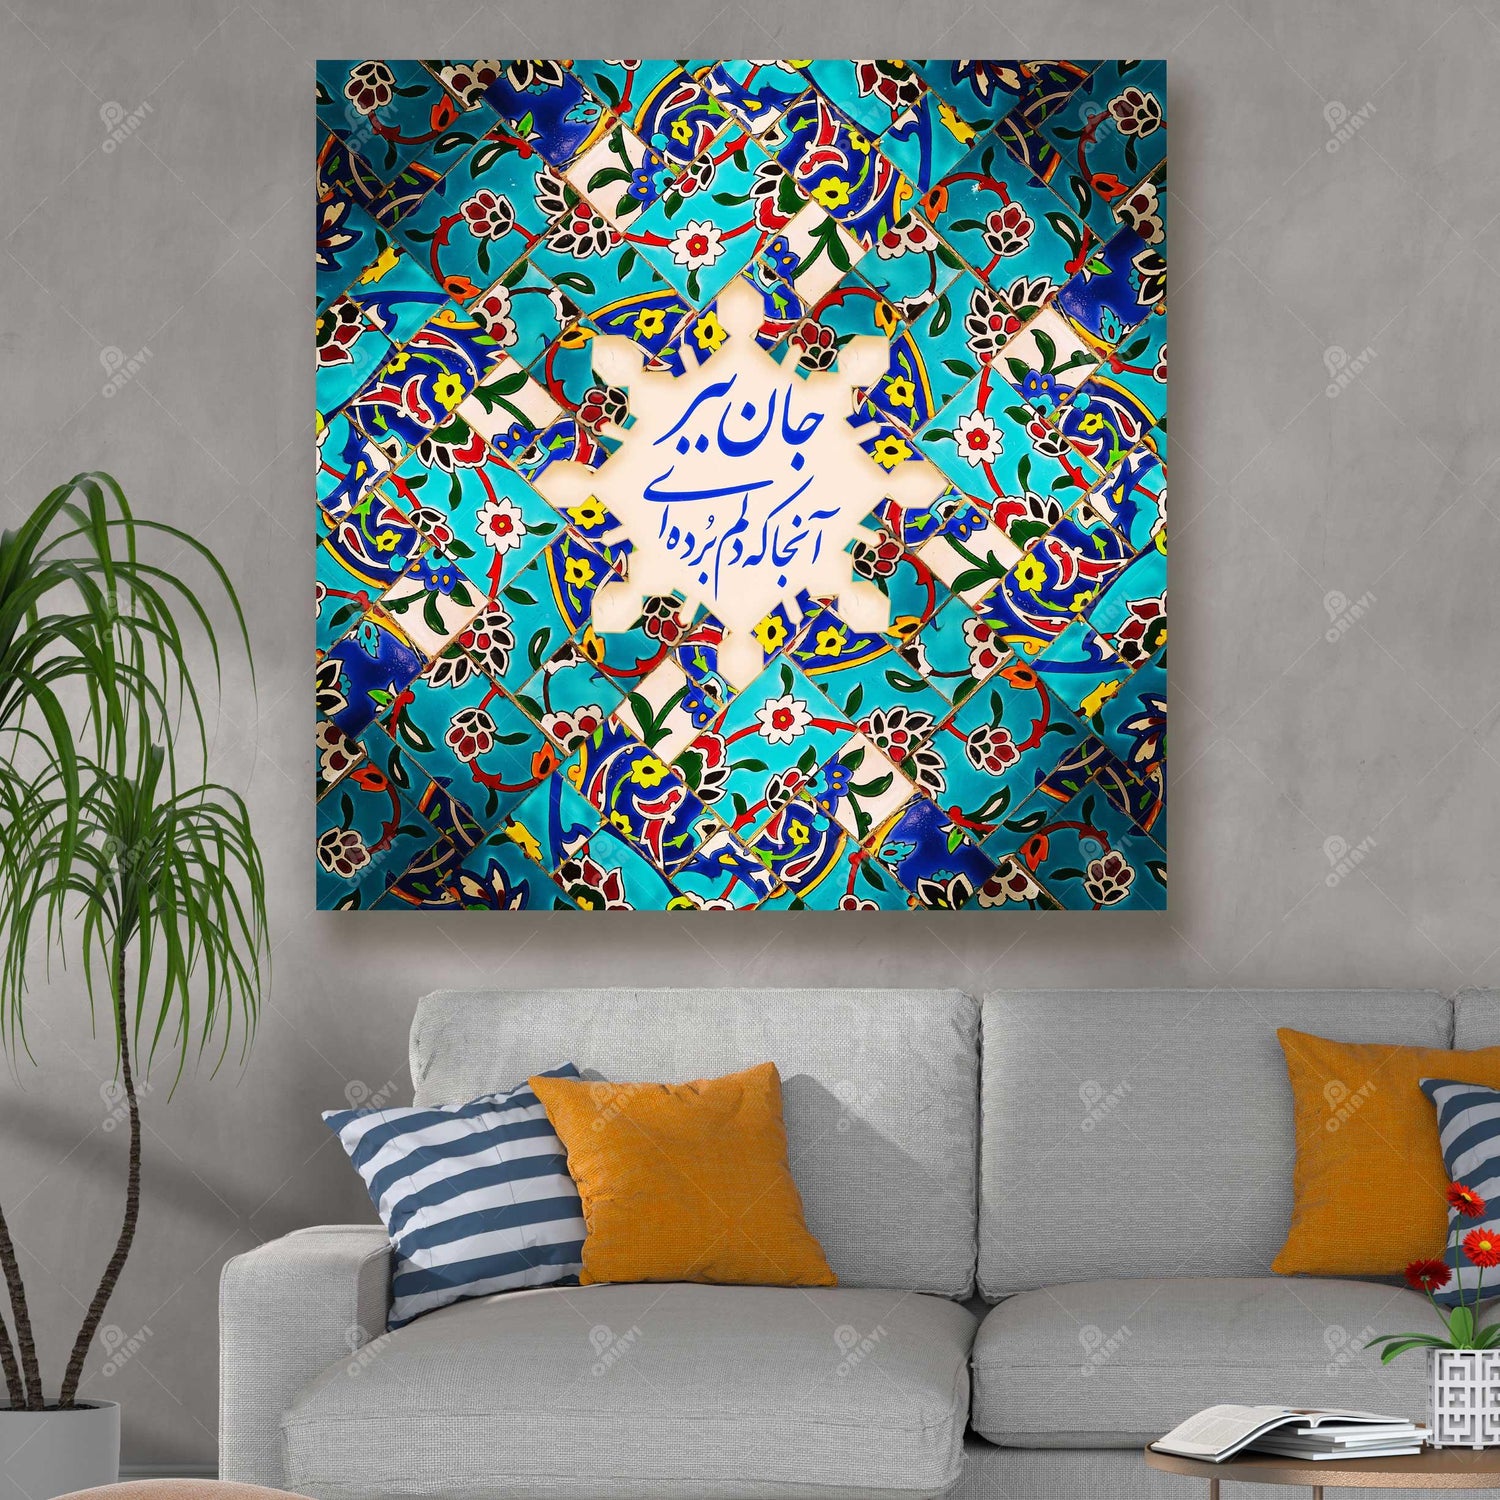 JAAN BEBAR | Persian Wall Art | Persian Home Wall Decor - ORIAVI Persian Art, persian artwork for sale, persian calligraphy, persian calligraphy wall art, persian mix media wall art, persian painting, persian wall art